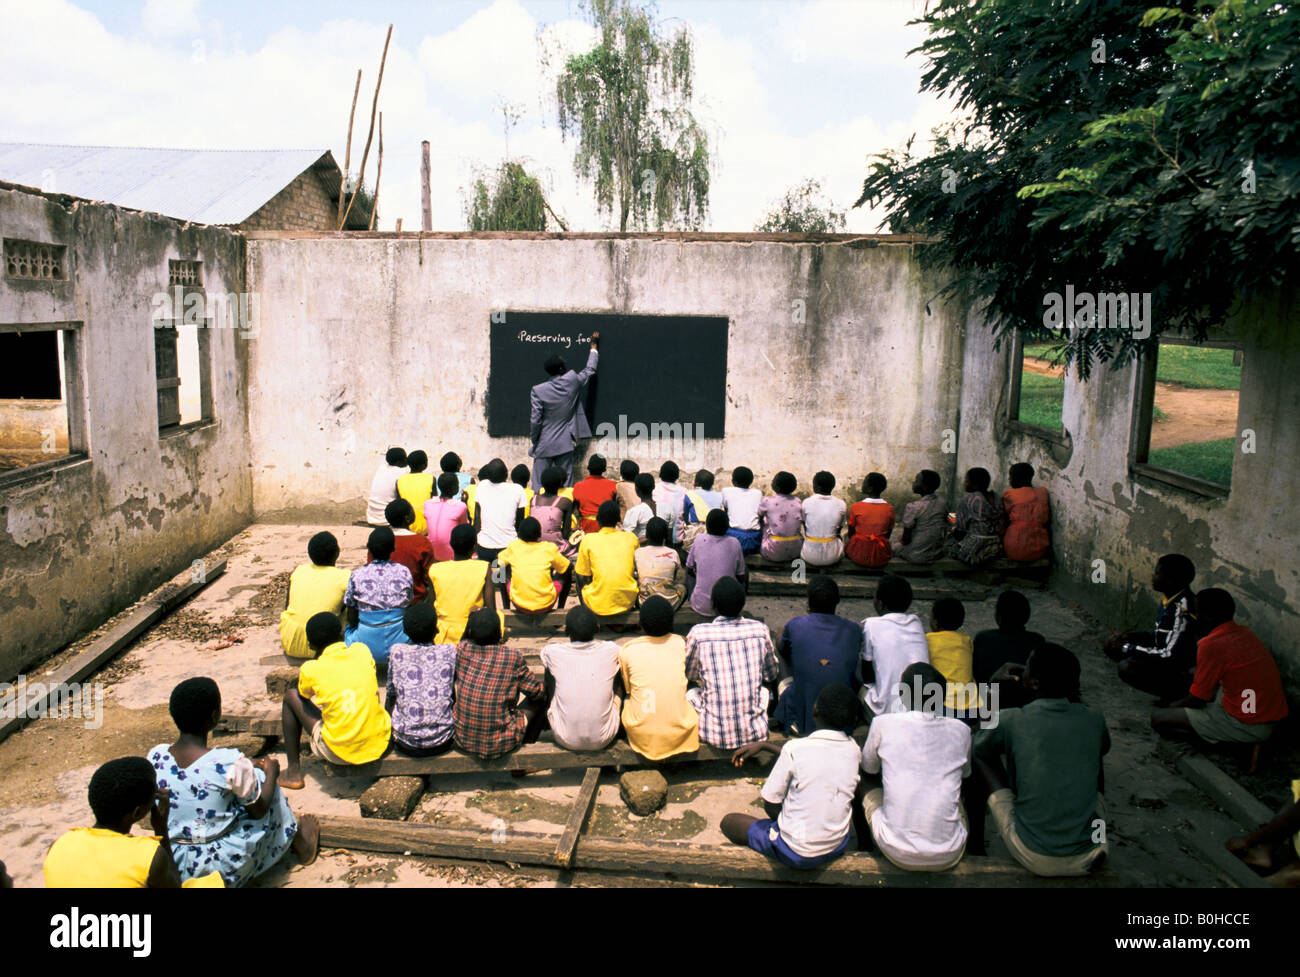 A teacher giving homework at an outdoor classroom, Uganda. Stock Photo